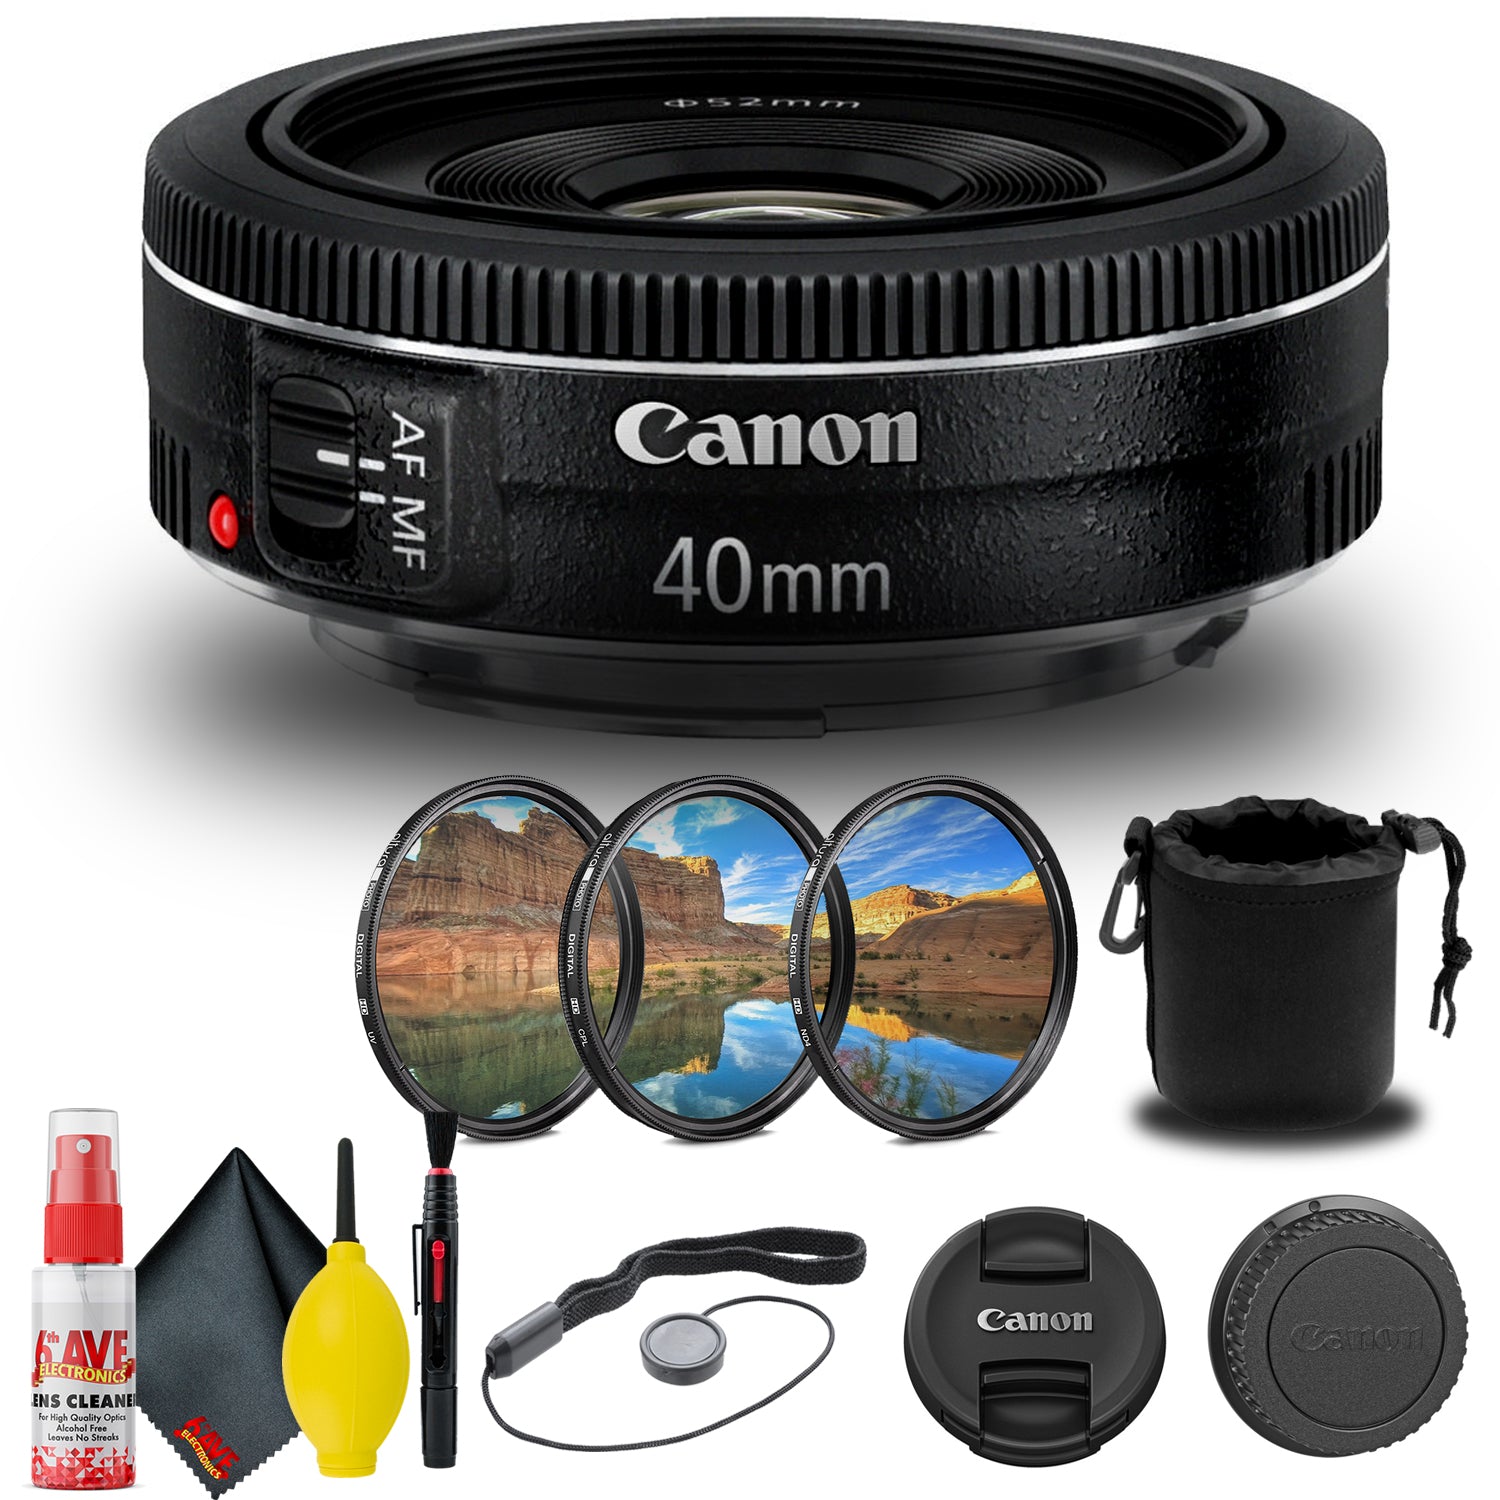 Canon EF 40mm f/2.8 STM Lens (6310B002) + Filter Kit + Lens Pouch Base Bundle